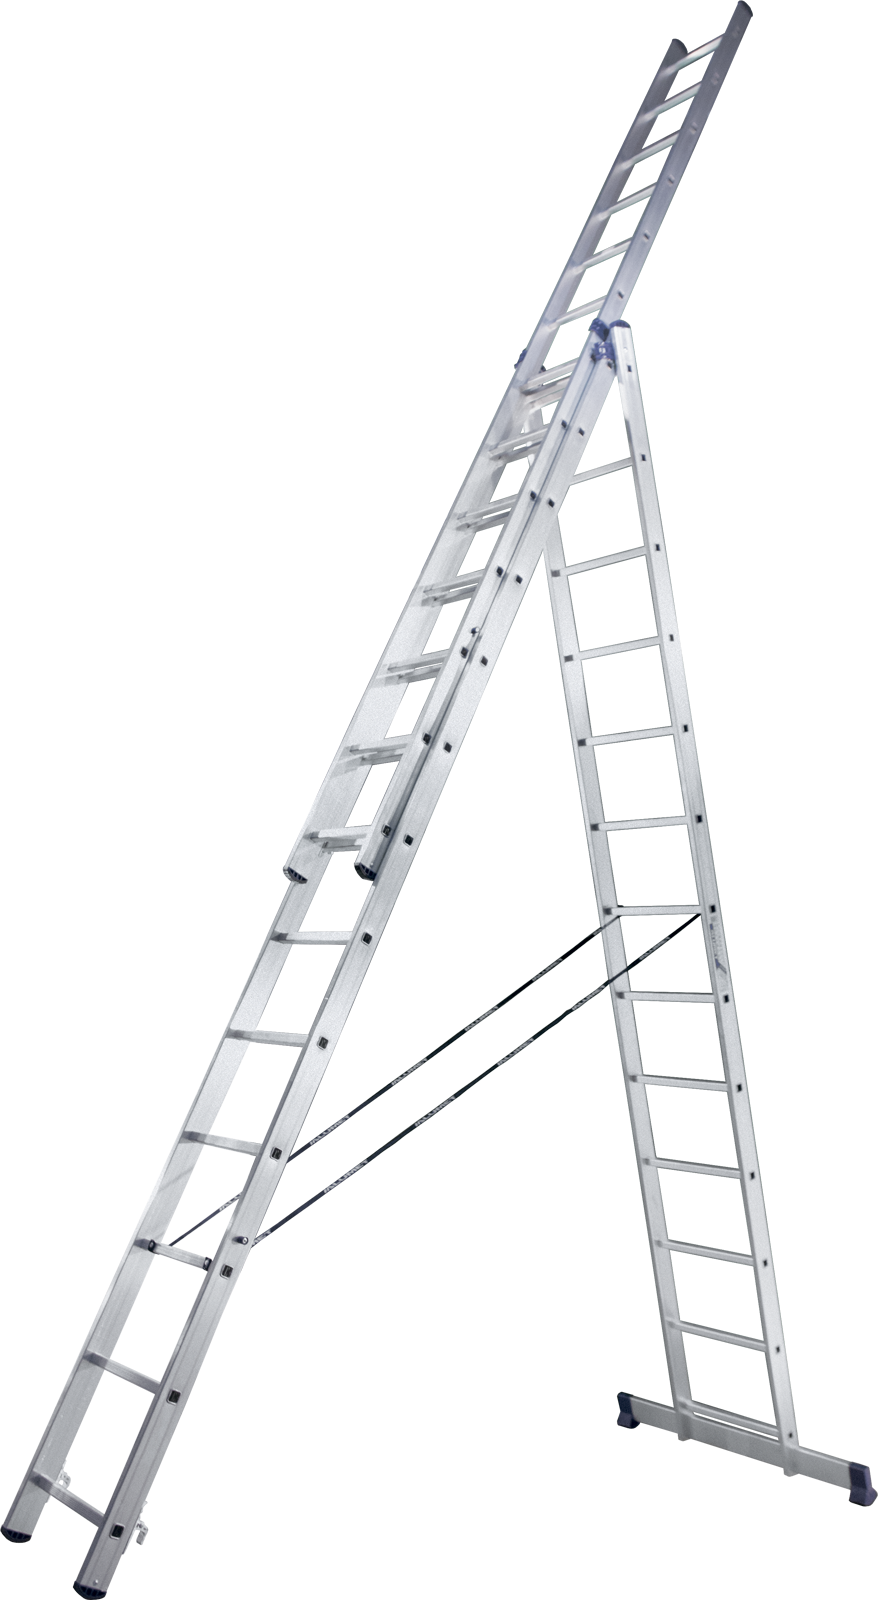 Трехсекционная универсальная лестница Алюмет Н3, алюминий - фото